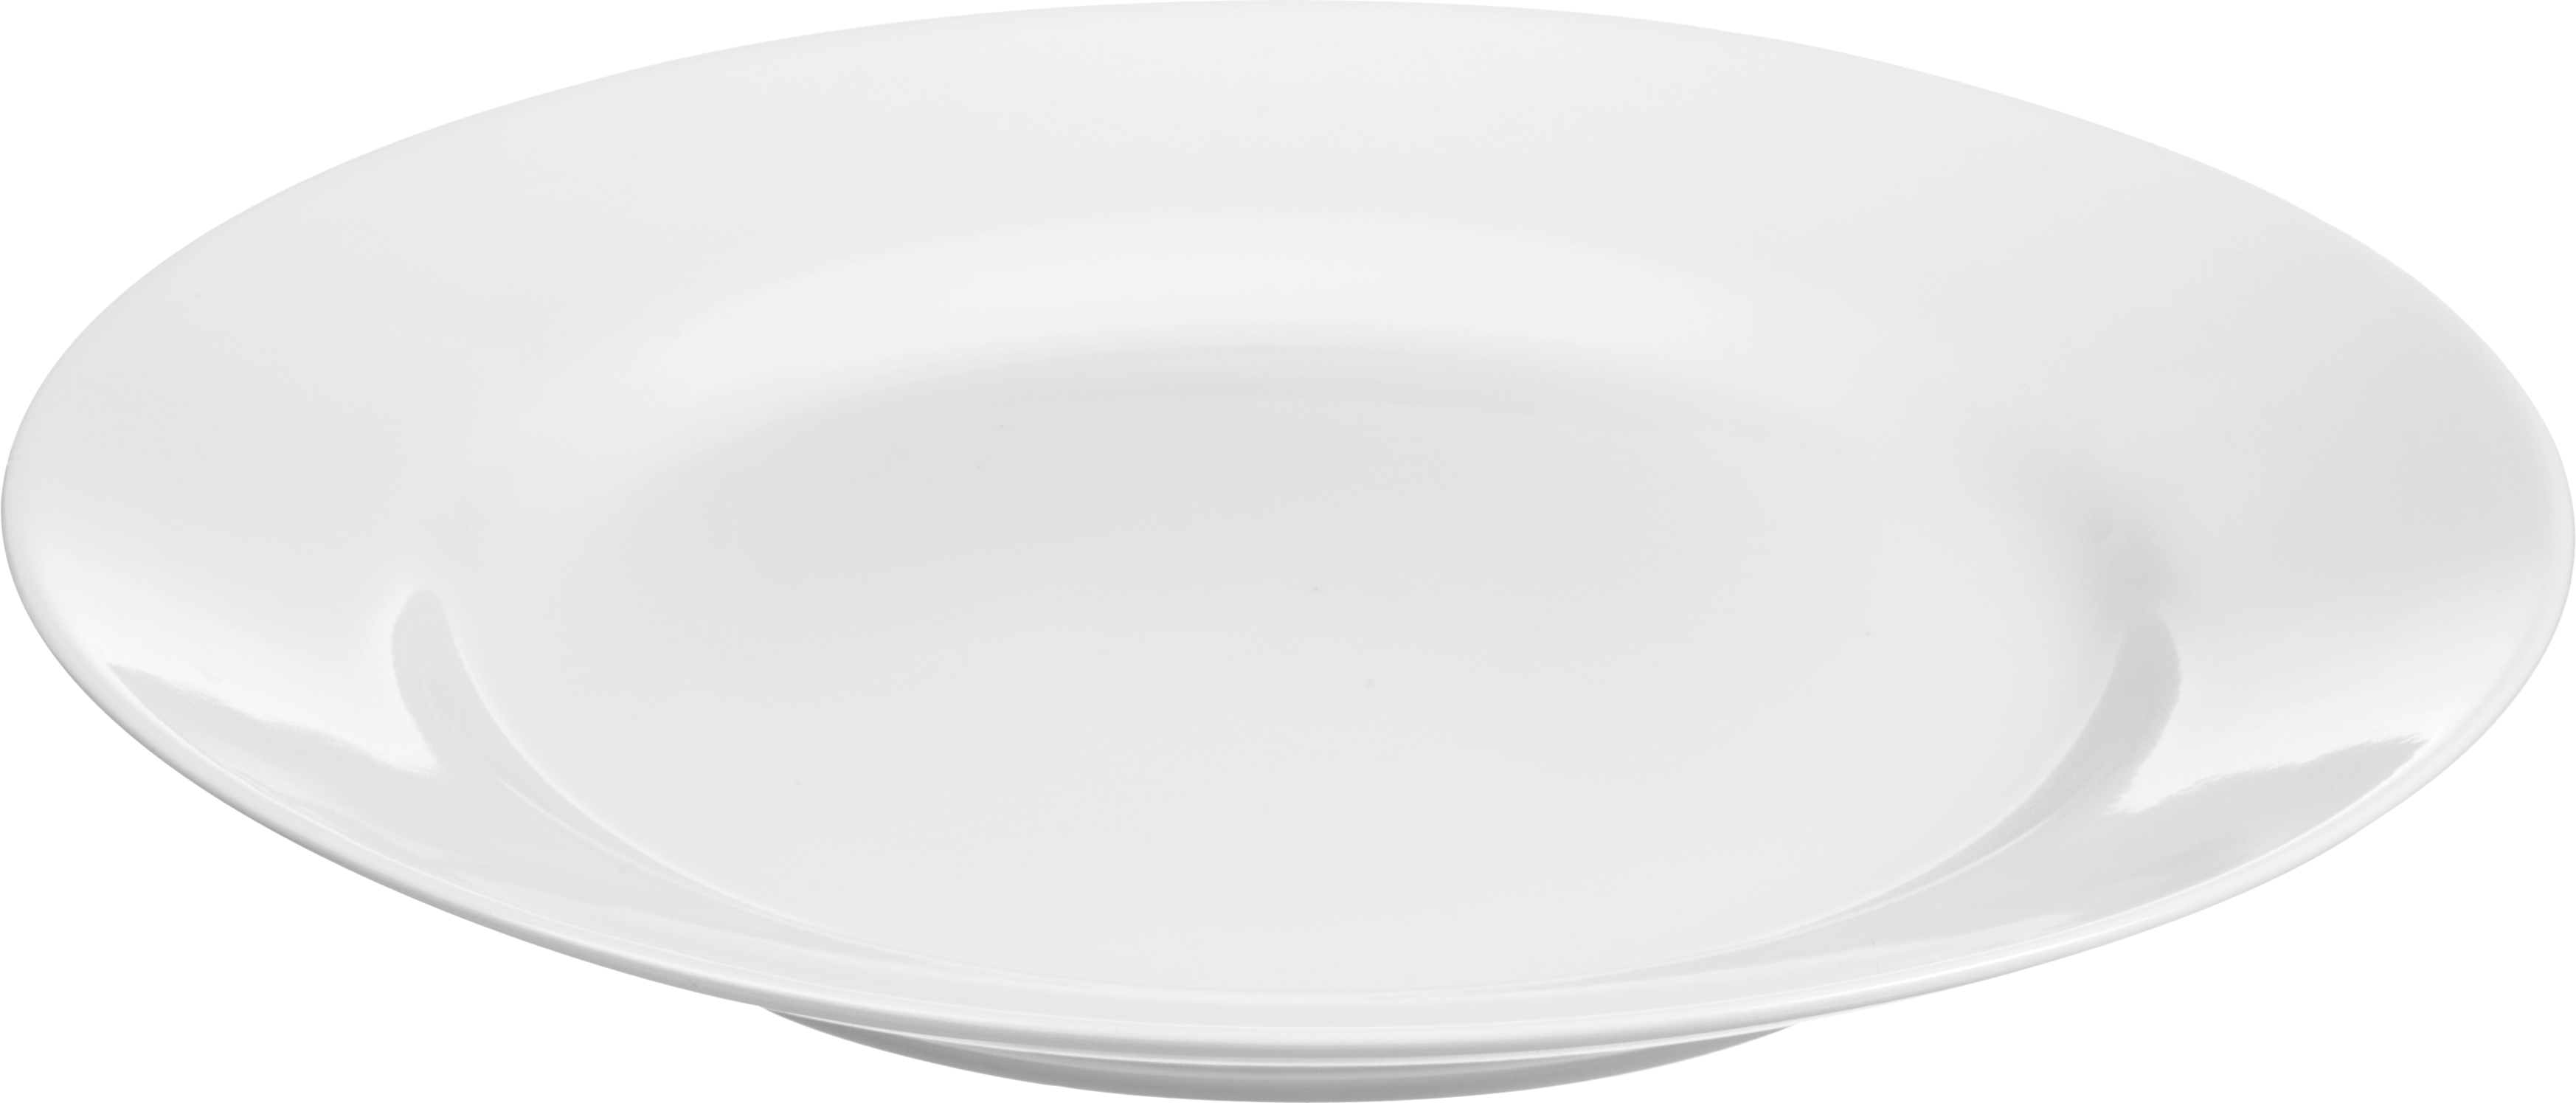 Weiße Platte PNG HD -Bild